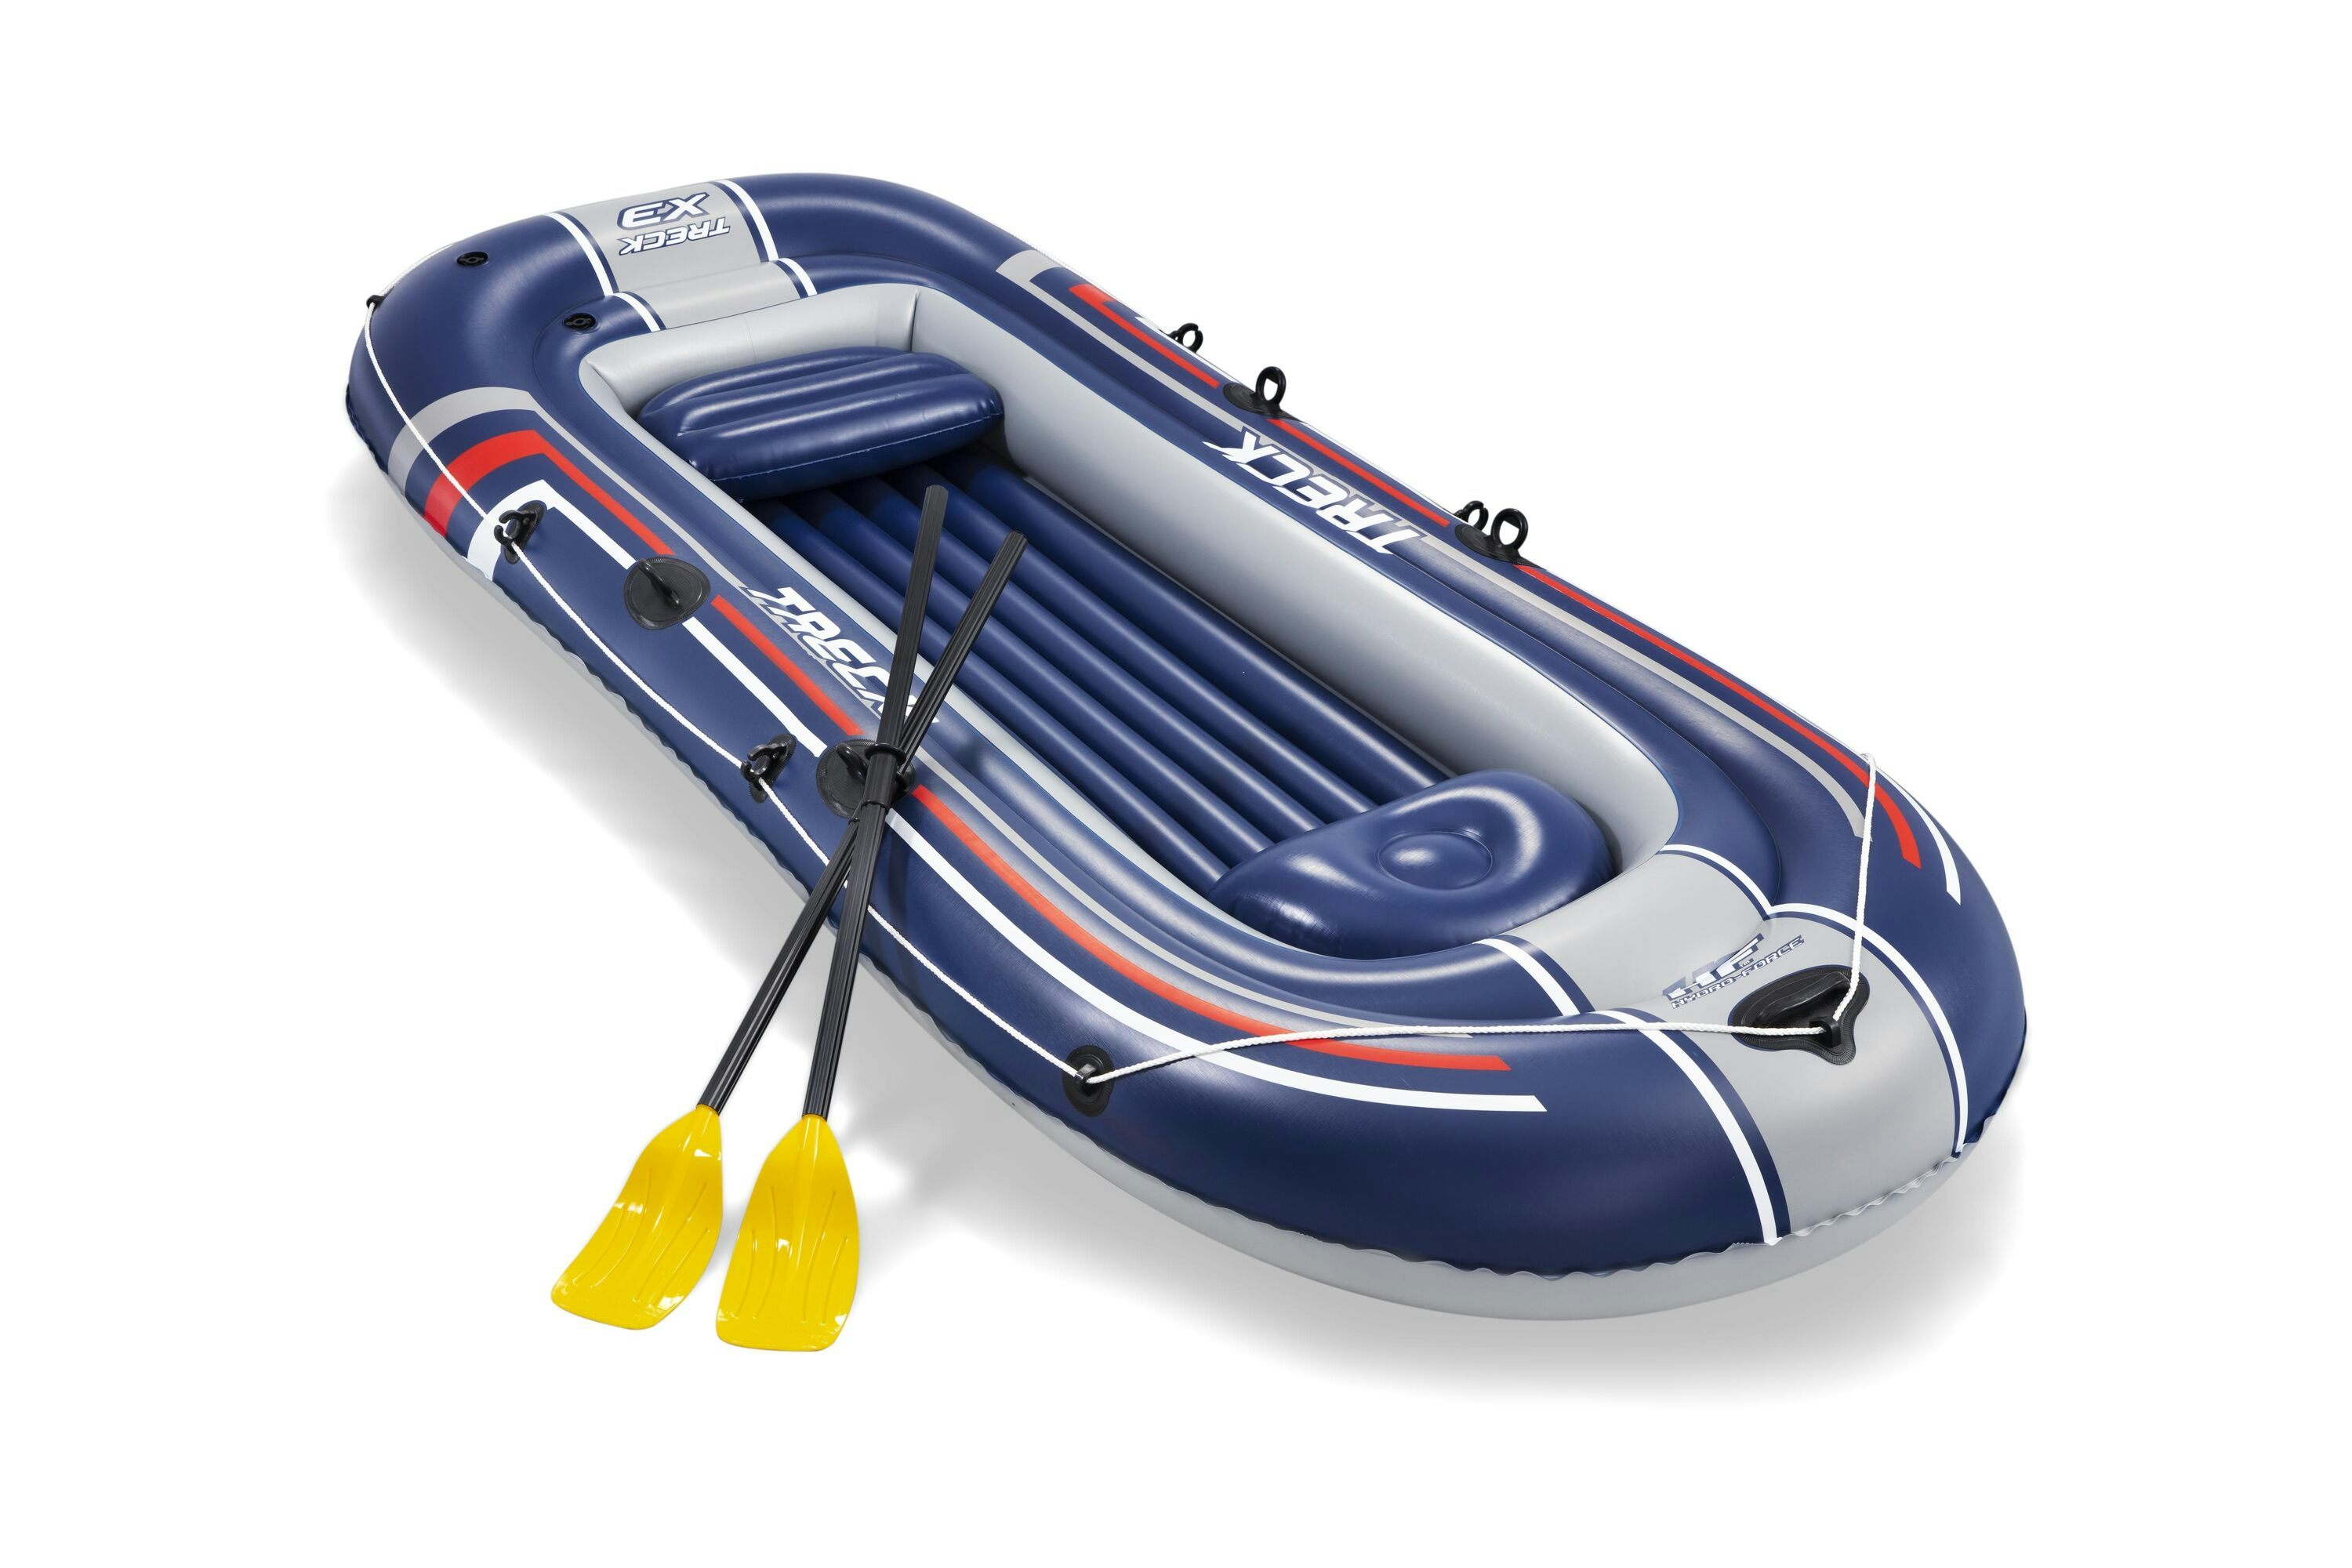 Sports d'eau Bateau gonflable Treck X3 set Hydro-Force™, 307 x 126 cm, 3 adultes et 1 enfant, 2 pagaies et une pompe à pied Bestway 1